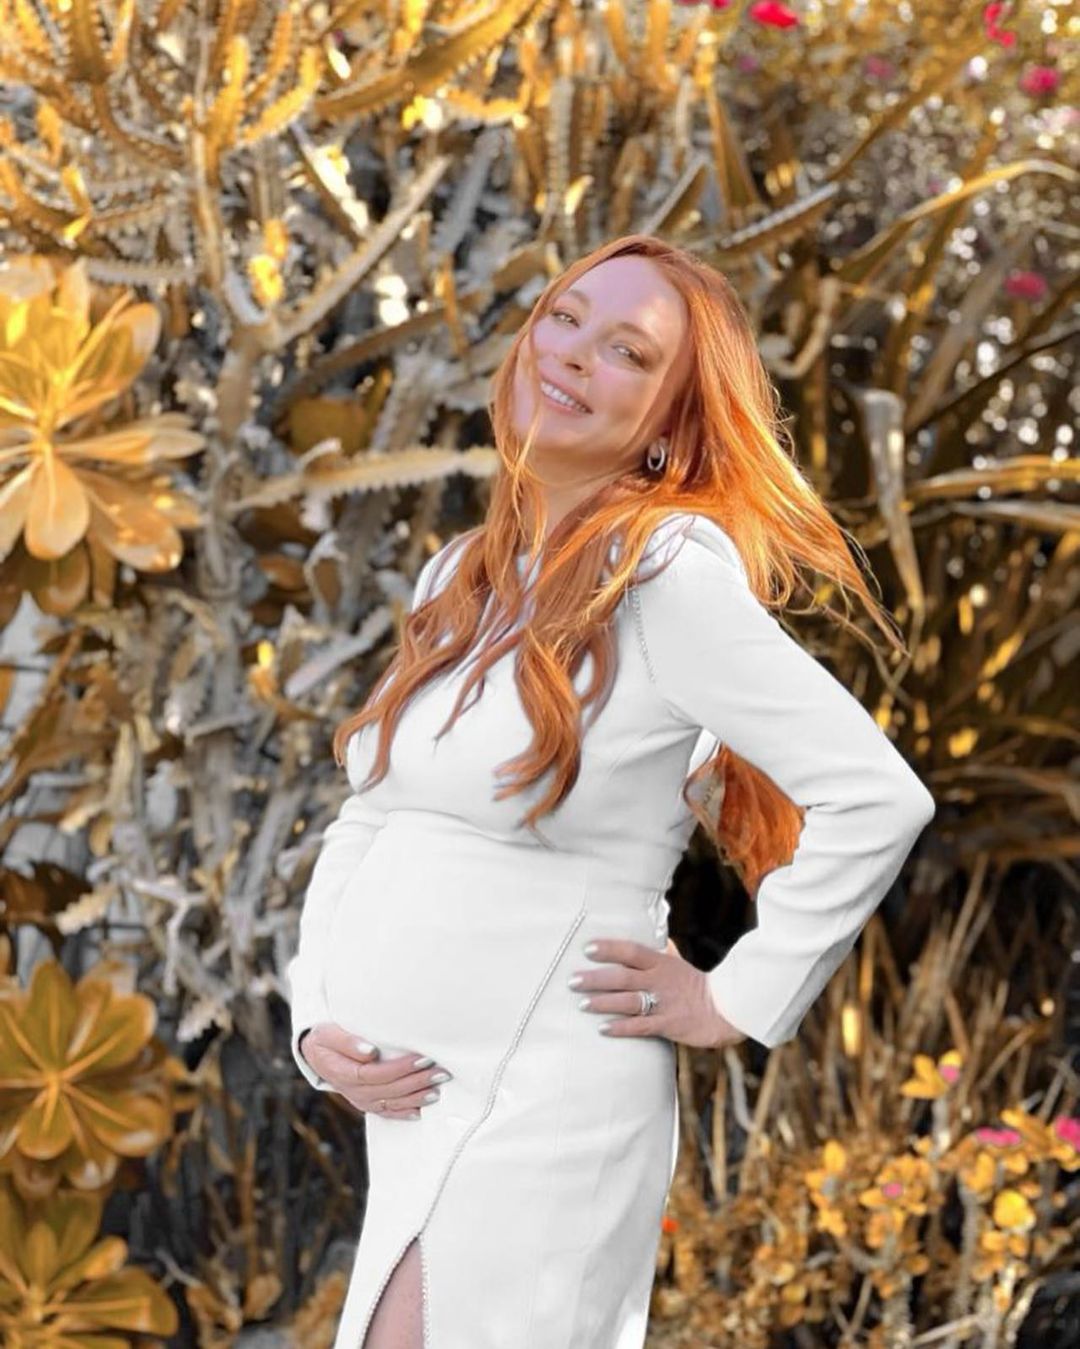 Fotos n°5 : Lindsay Lohan se recuesta con su creciente bulto!